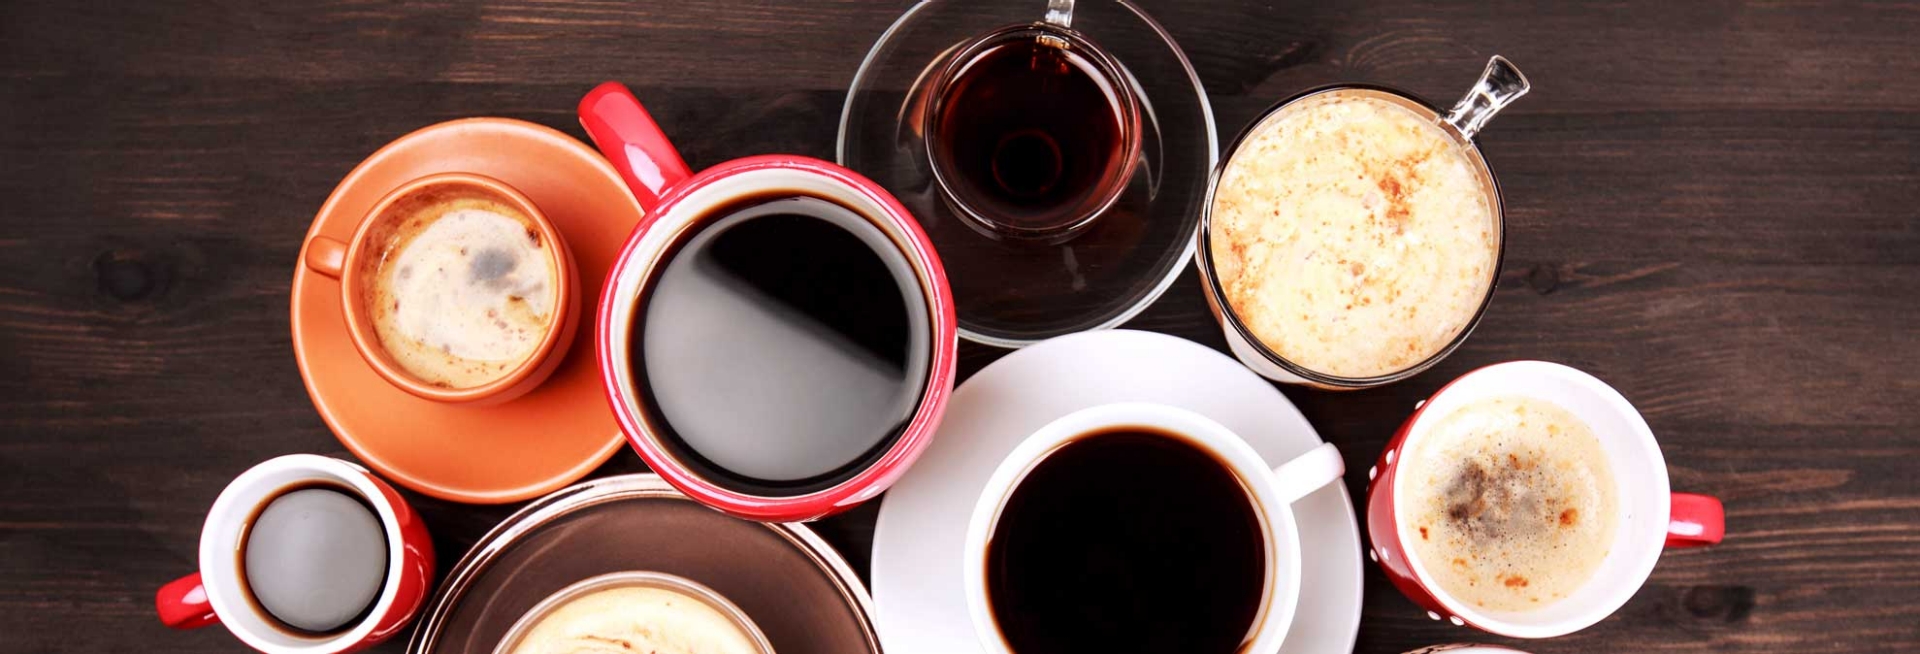 Liệu bạn có đang tiêu thụ quá nhiều caffeine?